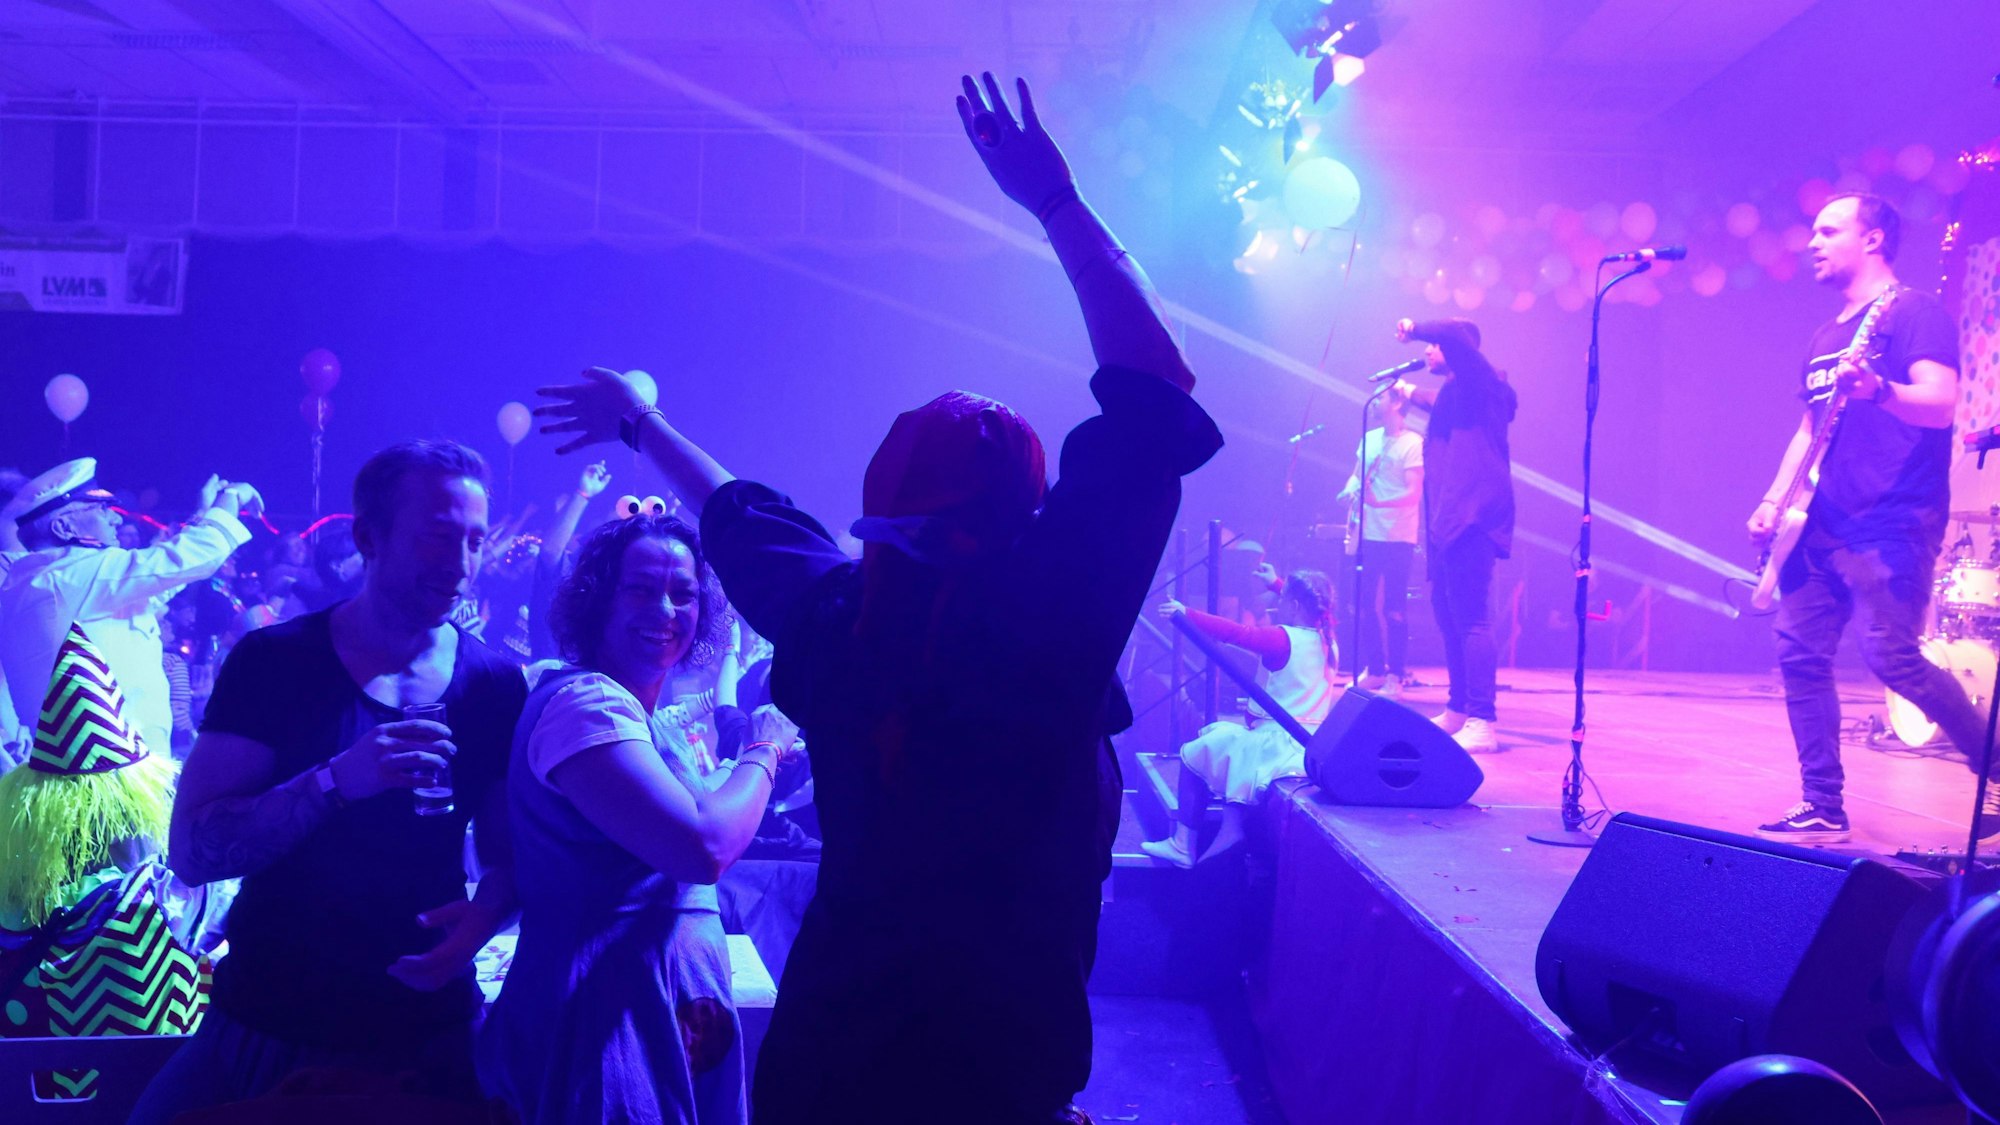 In einem Festzelt tanzt ein Mann vor einer Bühne, auf dem eine Band auftritt.